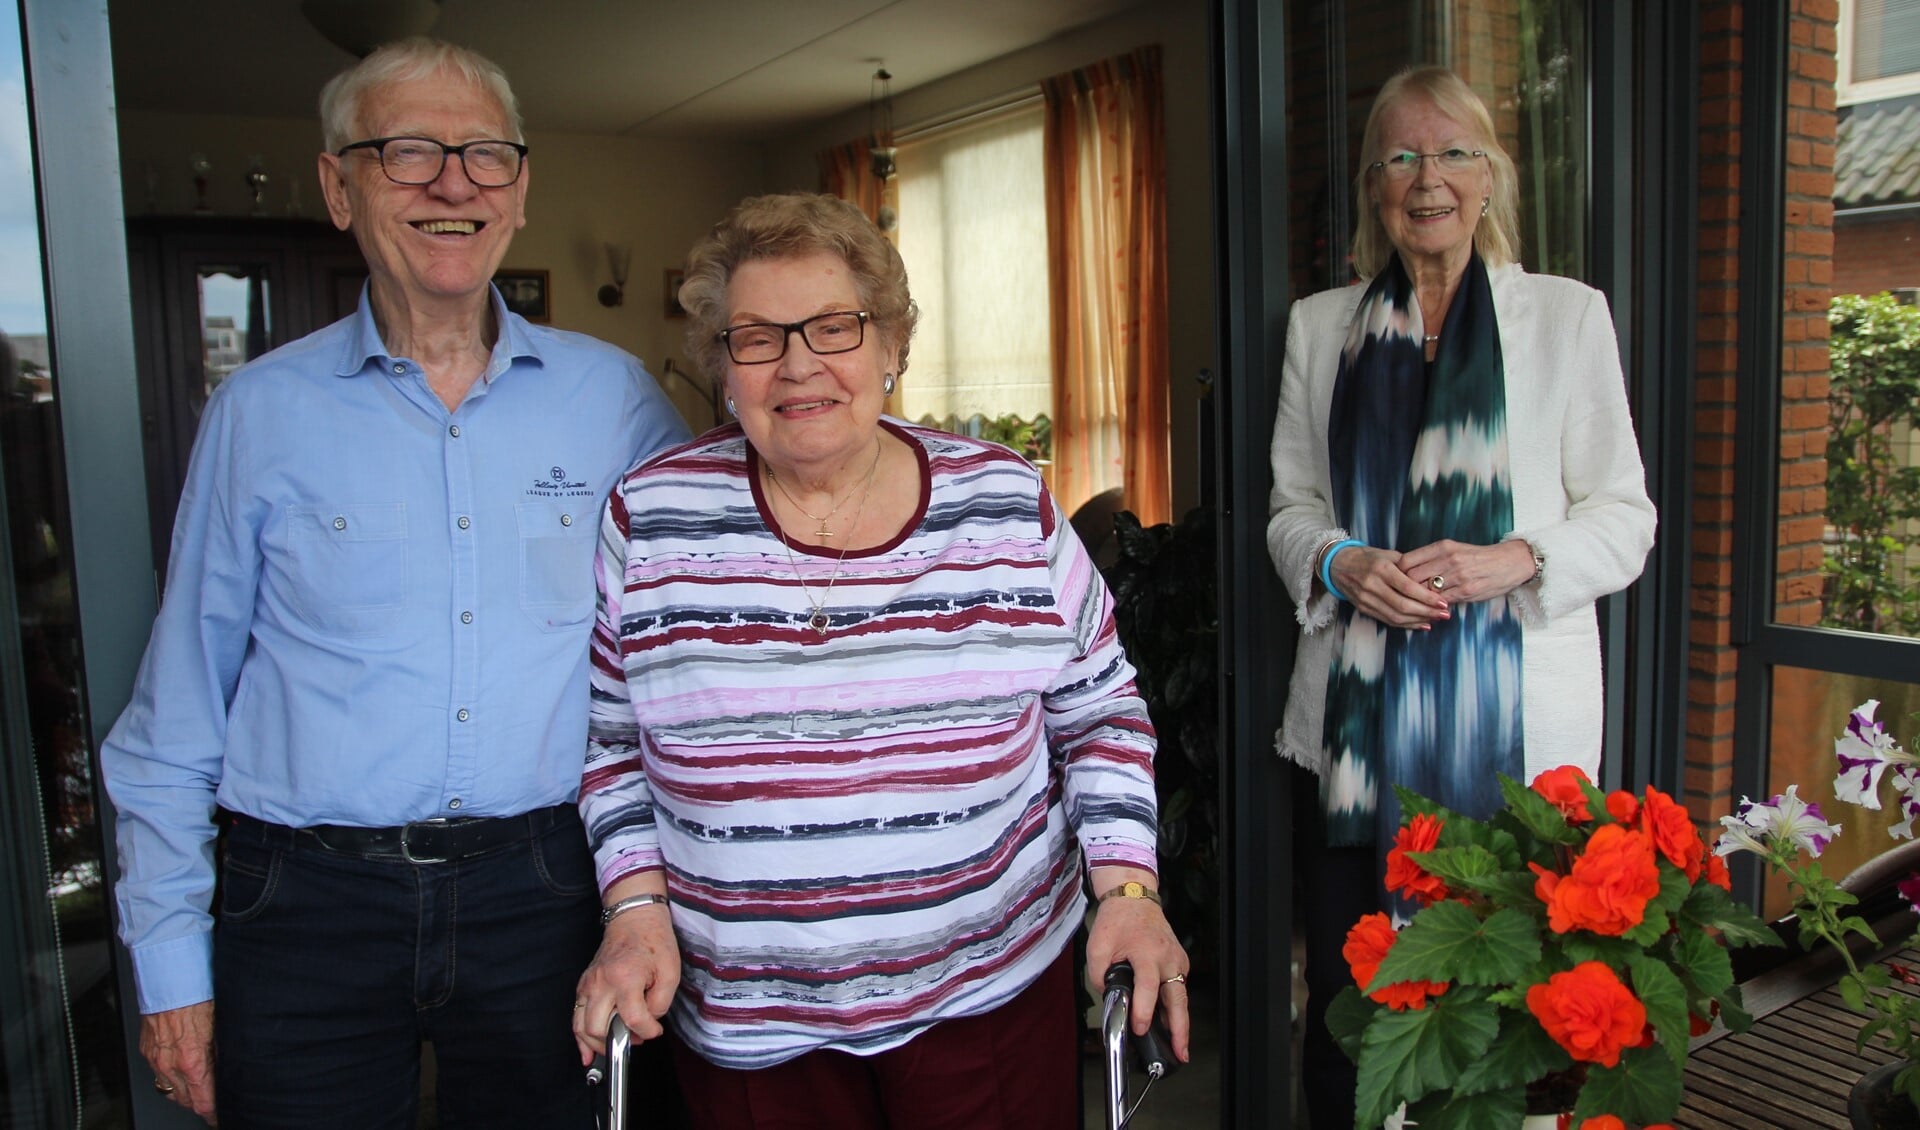 Op 14 april waren Piet de Vreede en Tonny Willems zestig jaar getrouwd. Vorige week kwam de burgemeester het Nootdorpse paar gelukwensen.